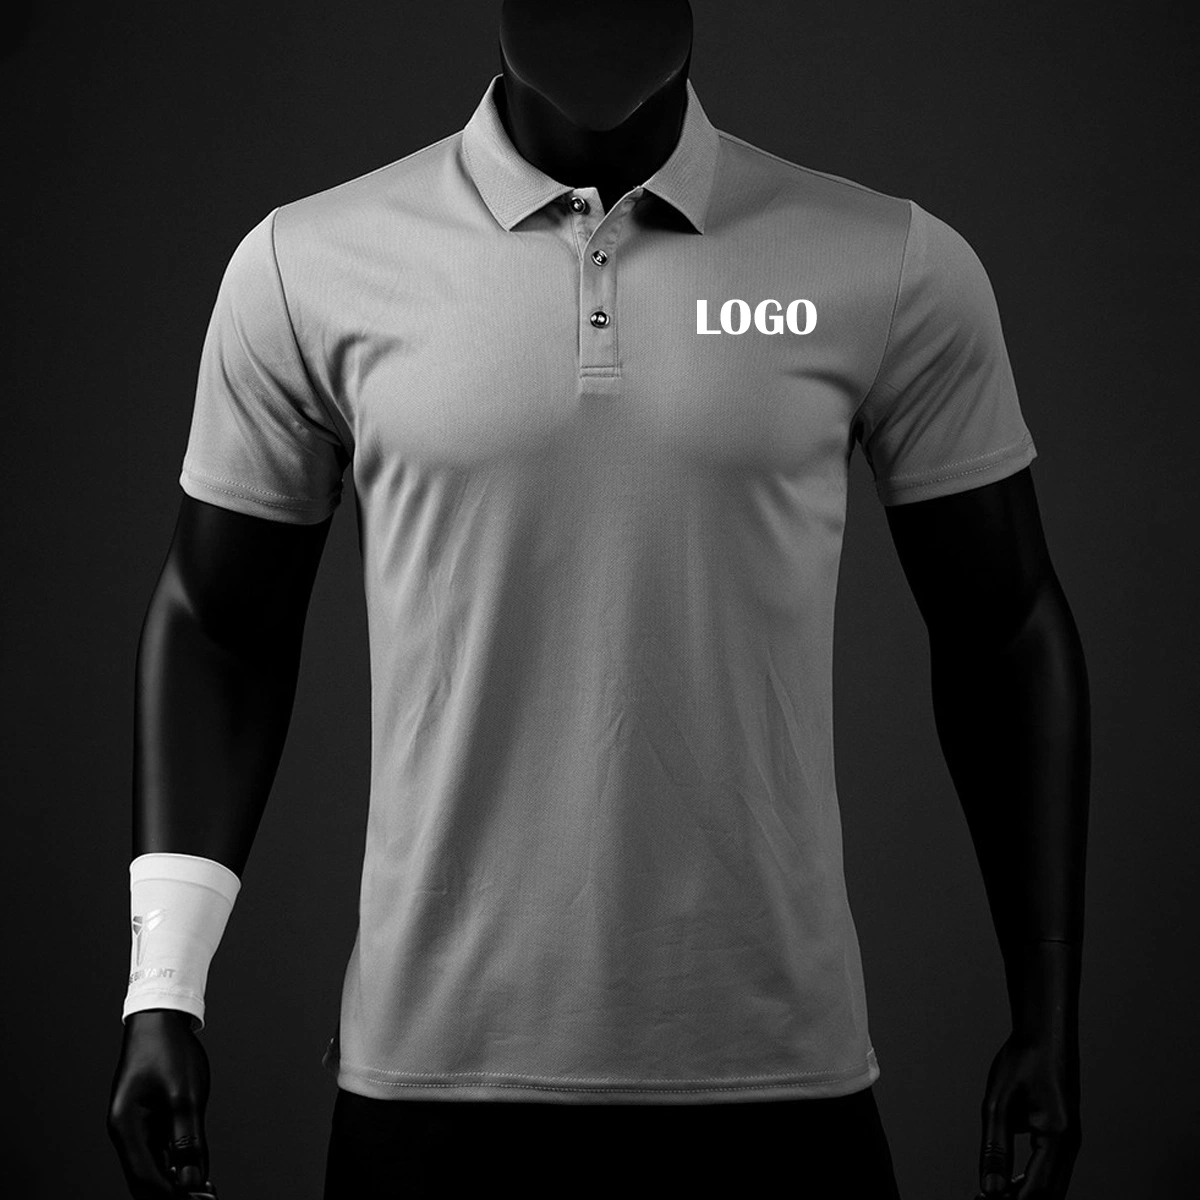 160g 100% Polyester schnell trocknend Einfarbig Individuelle Sublimation Slim Fit Herren T-Shirt Polo Blank Stickerei Druck Customized Boss Dry Fit Golf Polo T-Shirt für Herren